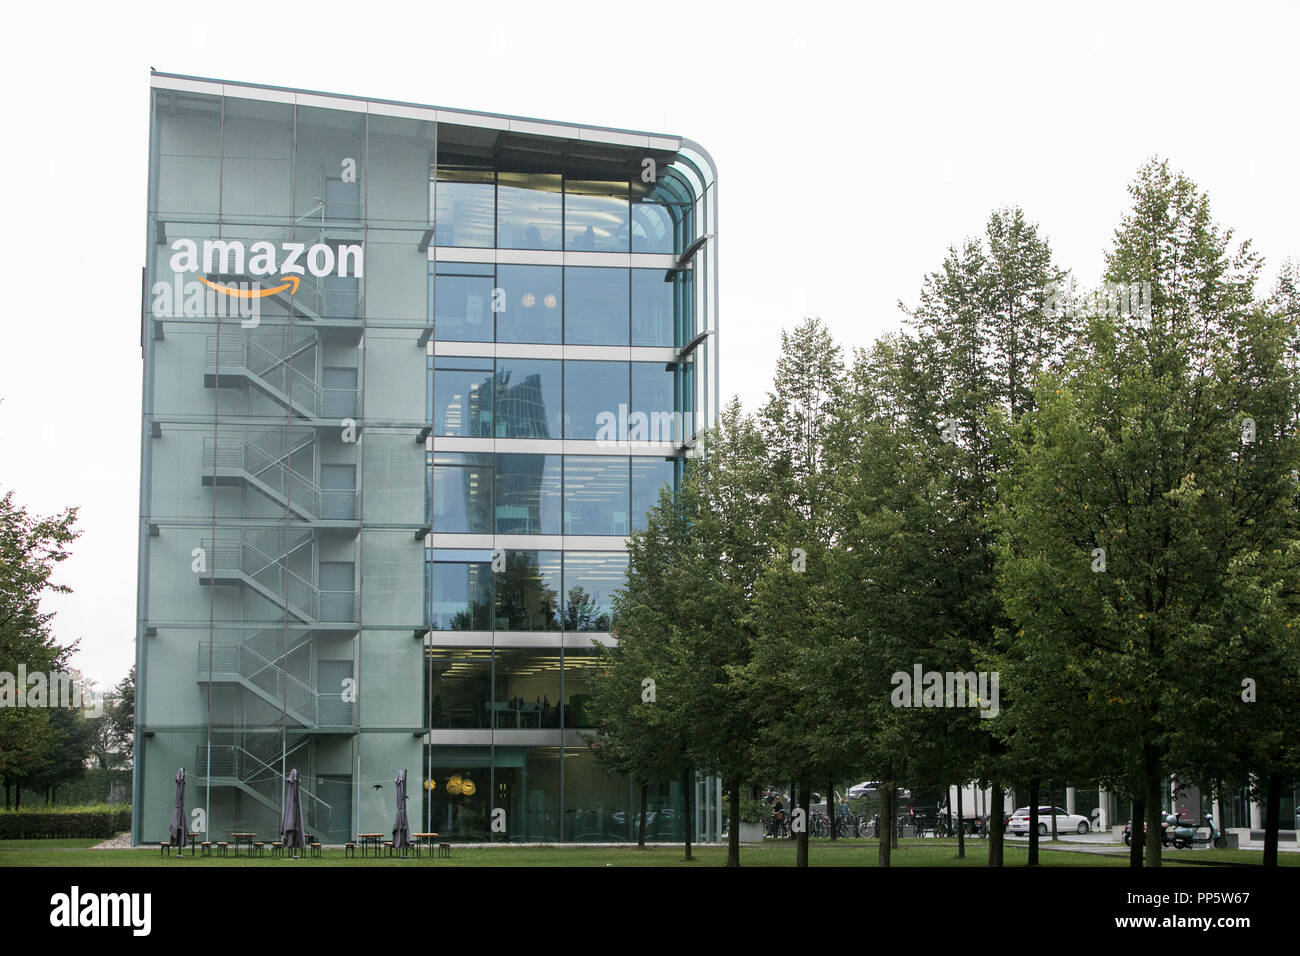 Ein logo Zeichen außerhalb einer Anlage besetzt von Amazon in München,  Deutschland, am 31. August 2018 Stockfotografie - Alamy